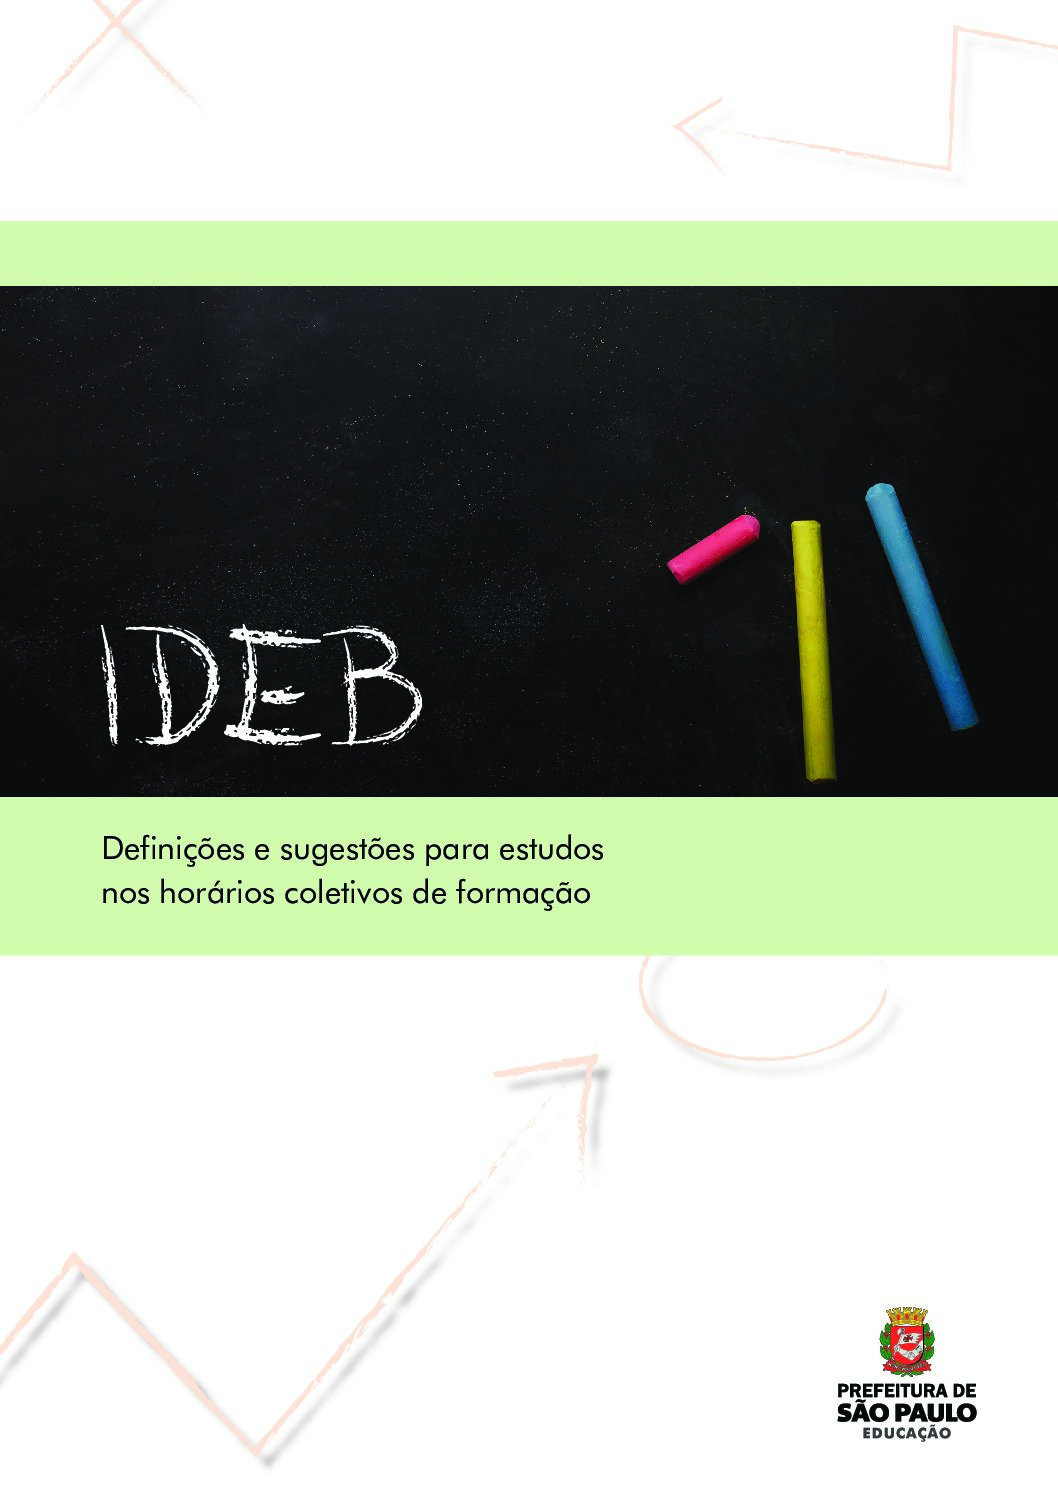 Publicação com orientações sobre o Índice de Desenvolvimento da Educação Básica - IDEB, indicador que articula a taxa de aprovação e a proficiência dos estudantes na Prova Brasil, para estudos nos horários coletivos de formação.